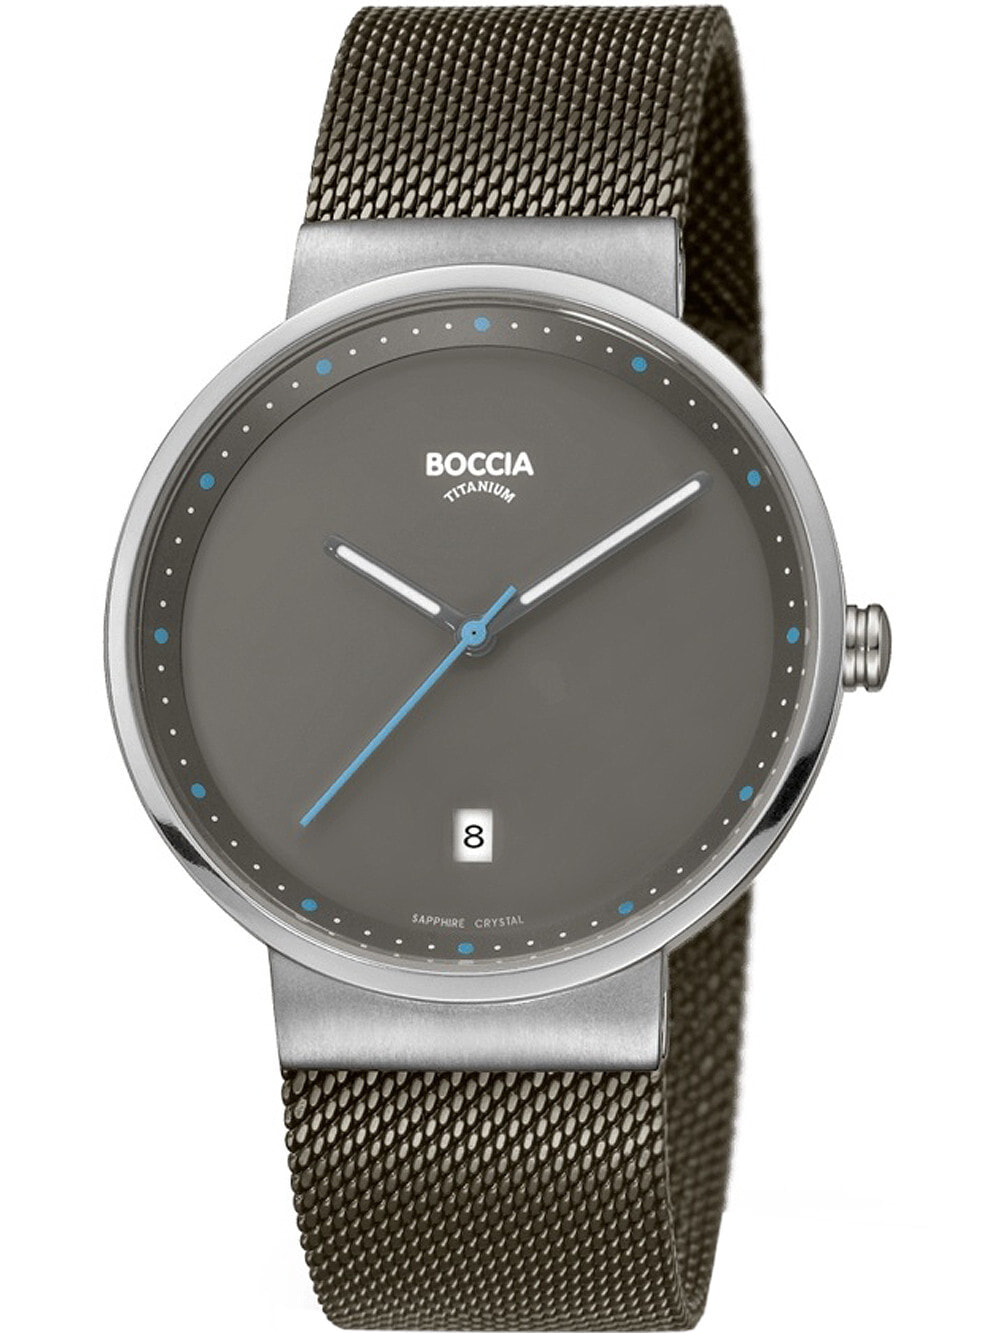 Мужские наручные часы с серебряным браслетом Boccia 3615-01 mens watch titanium 38mm 5ATM